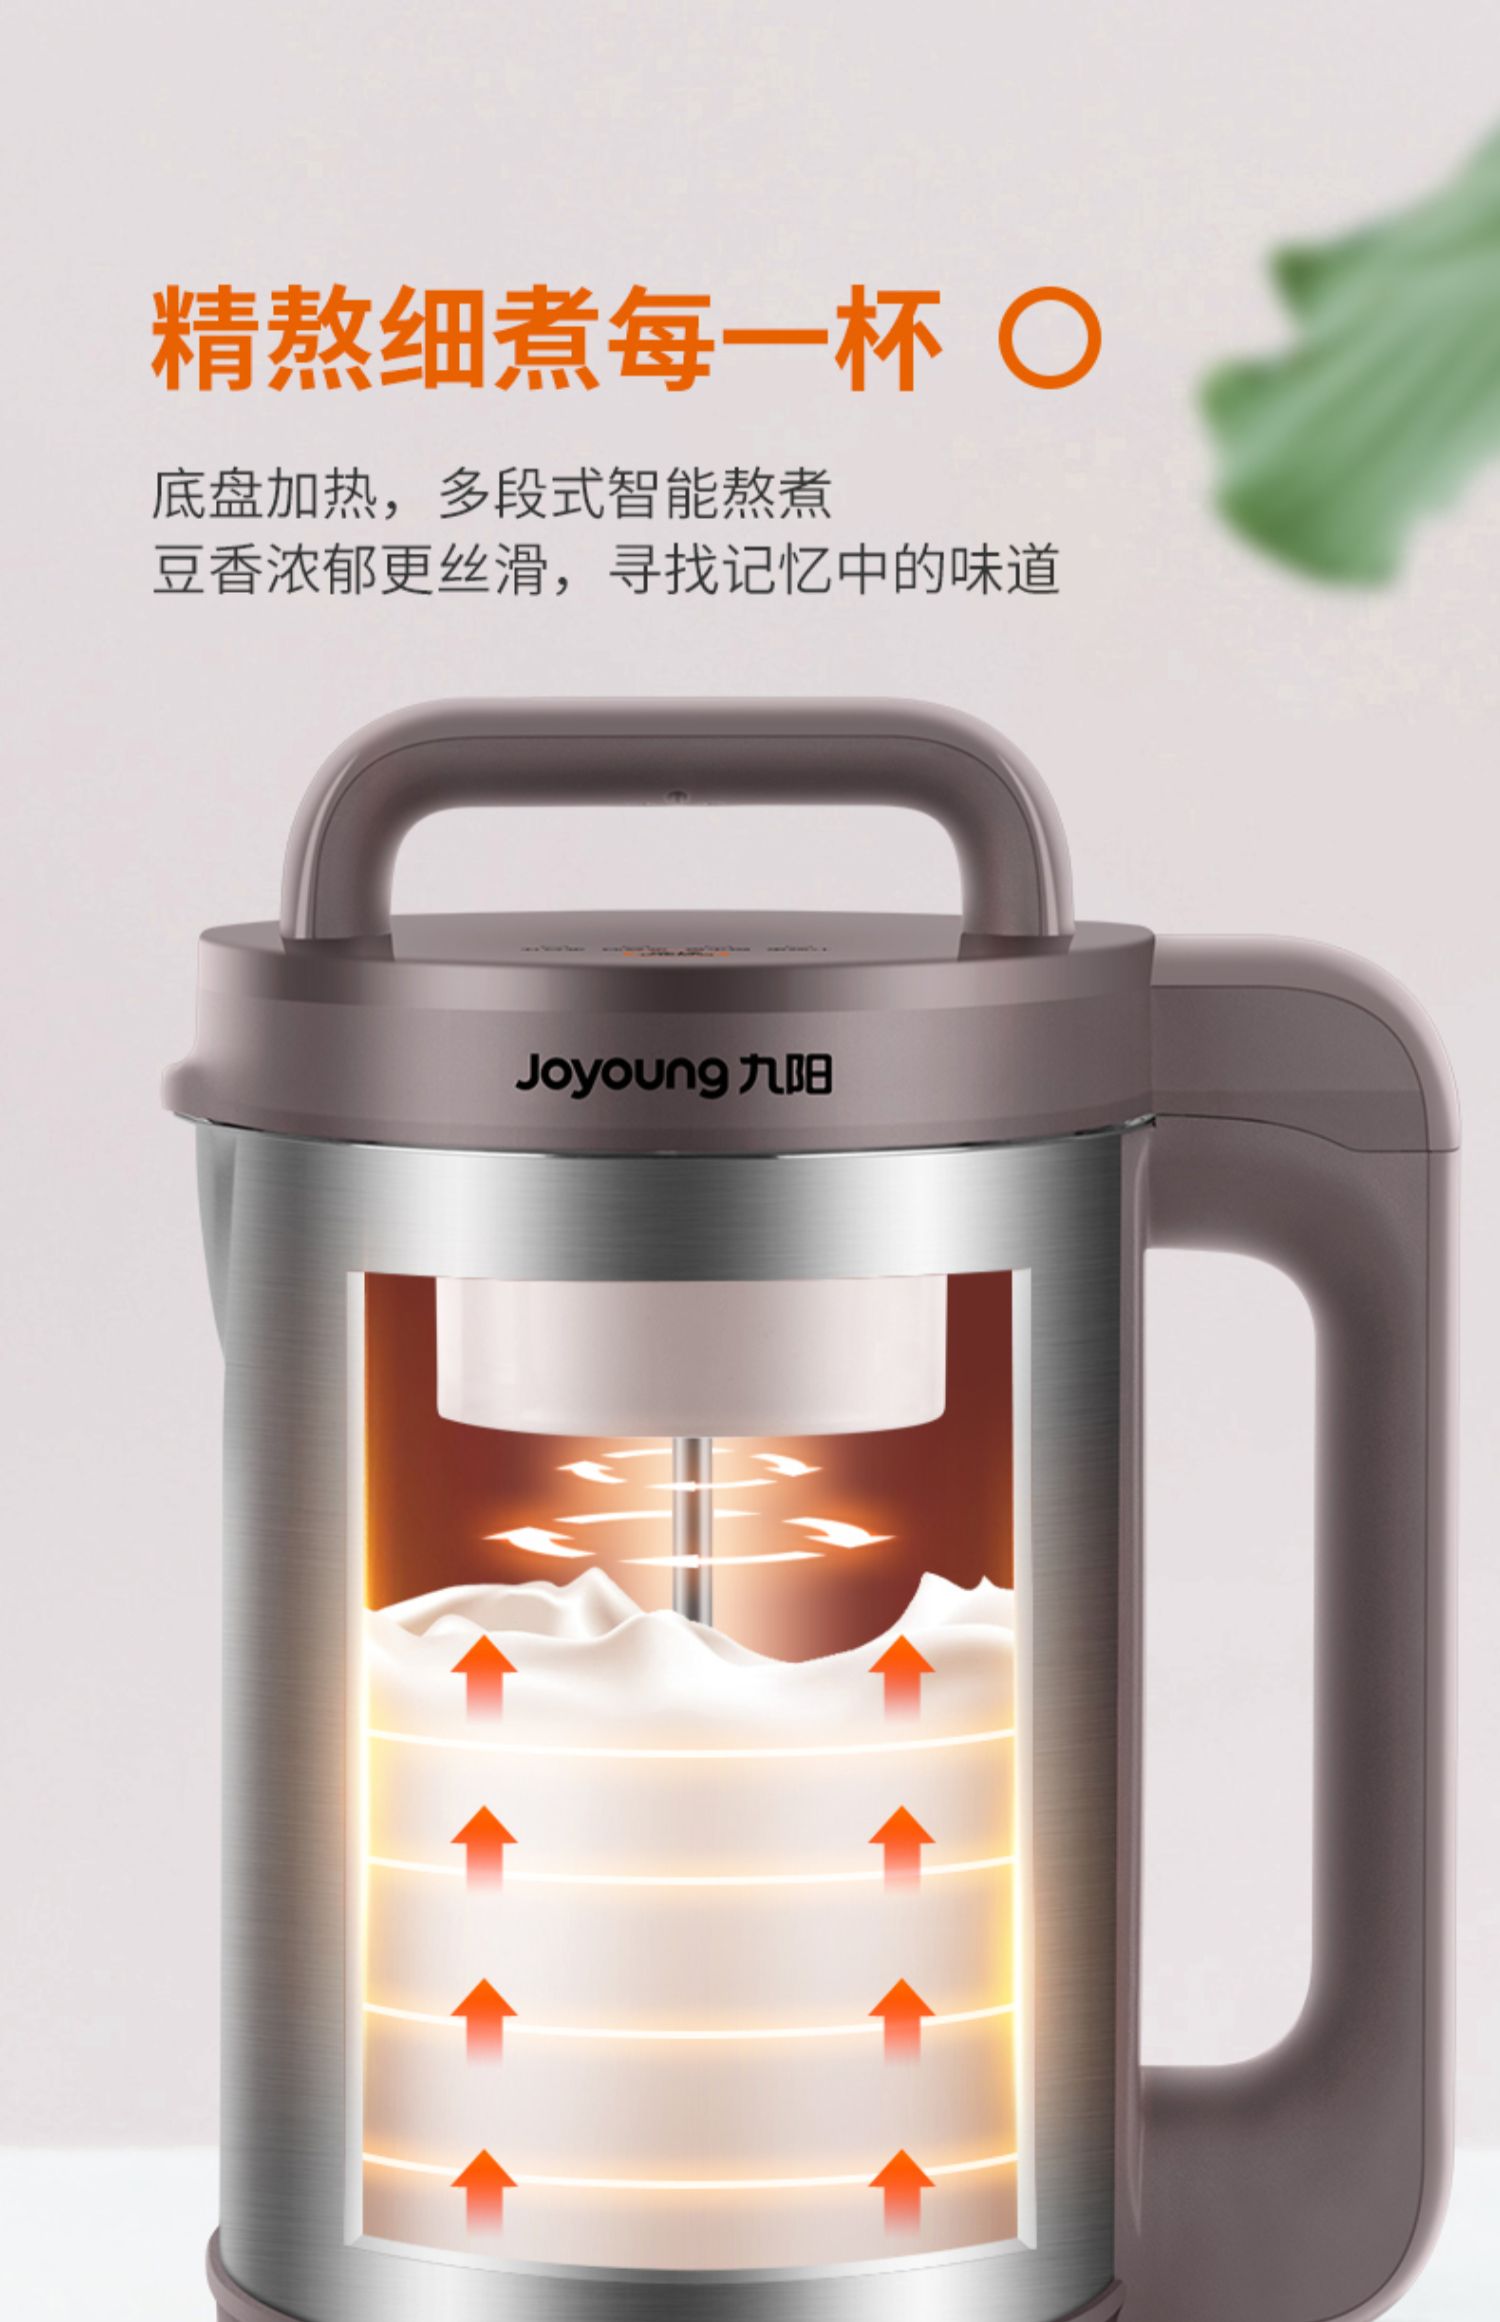 九阳商业自动豆浆机图片